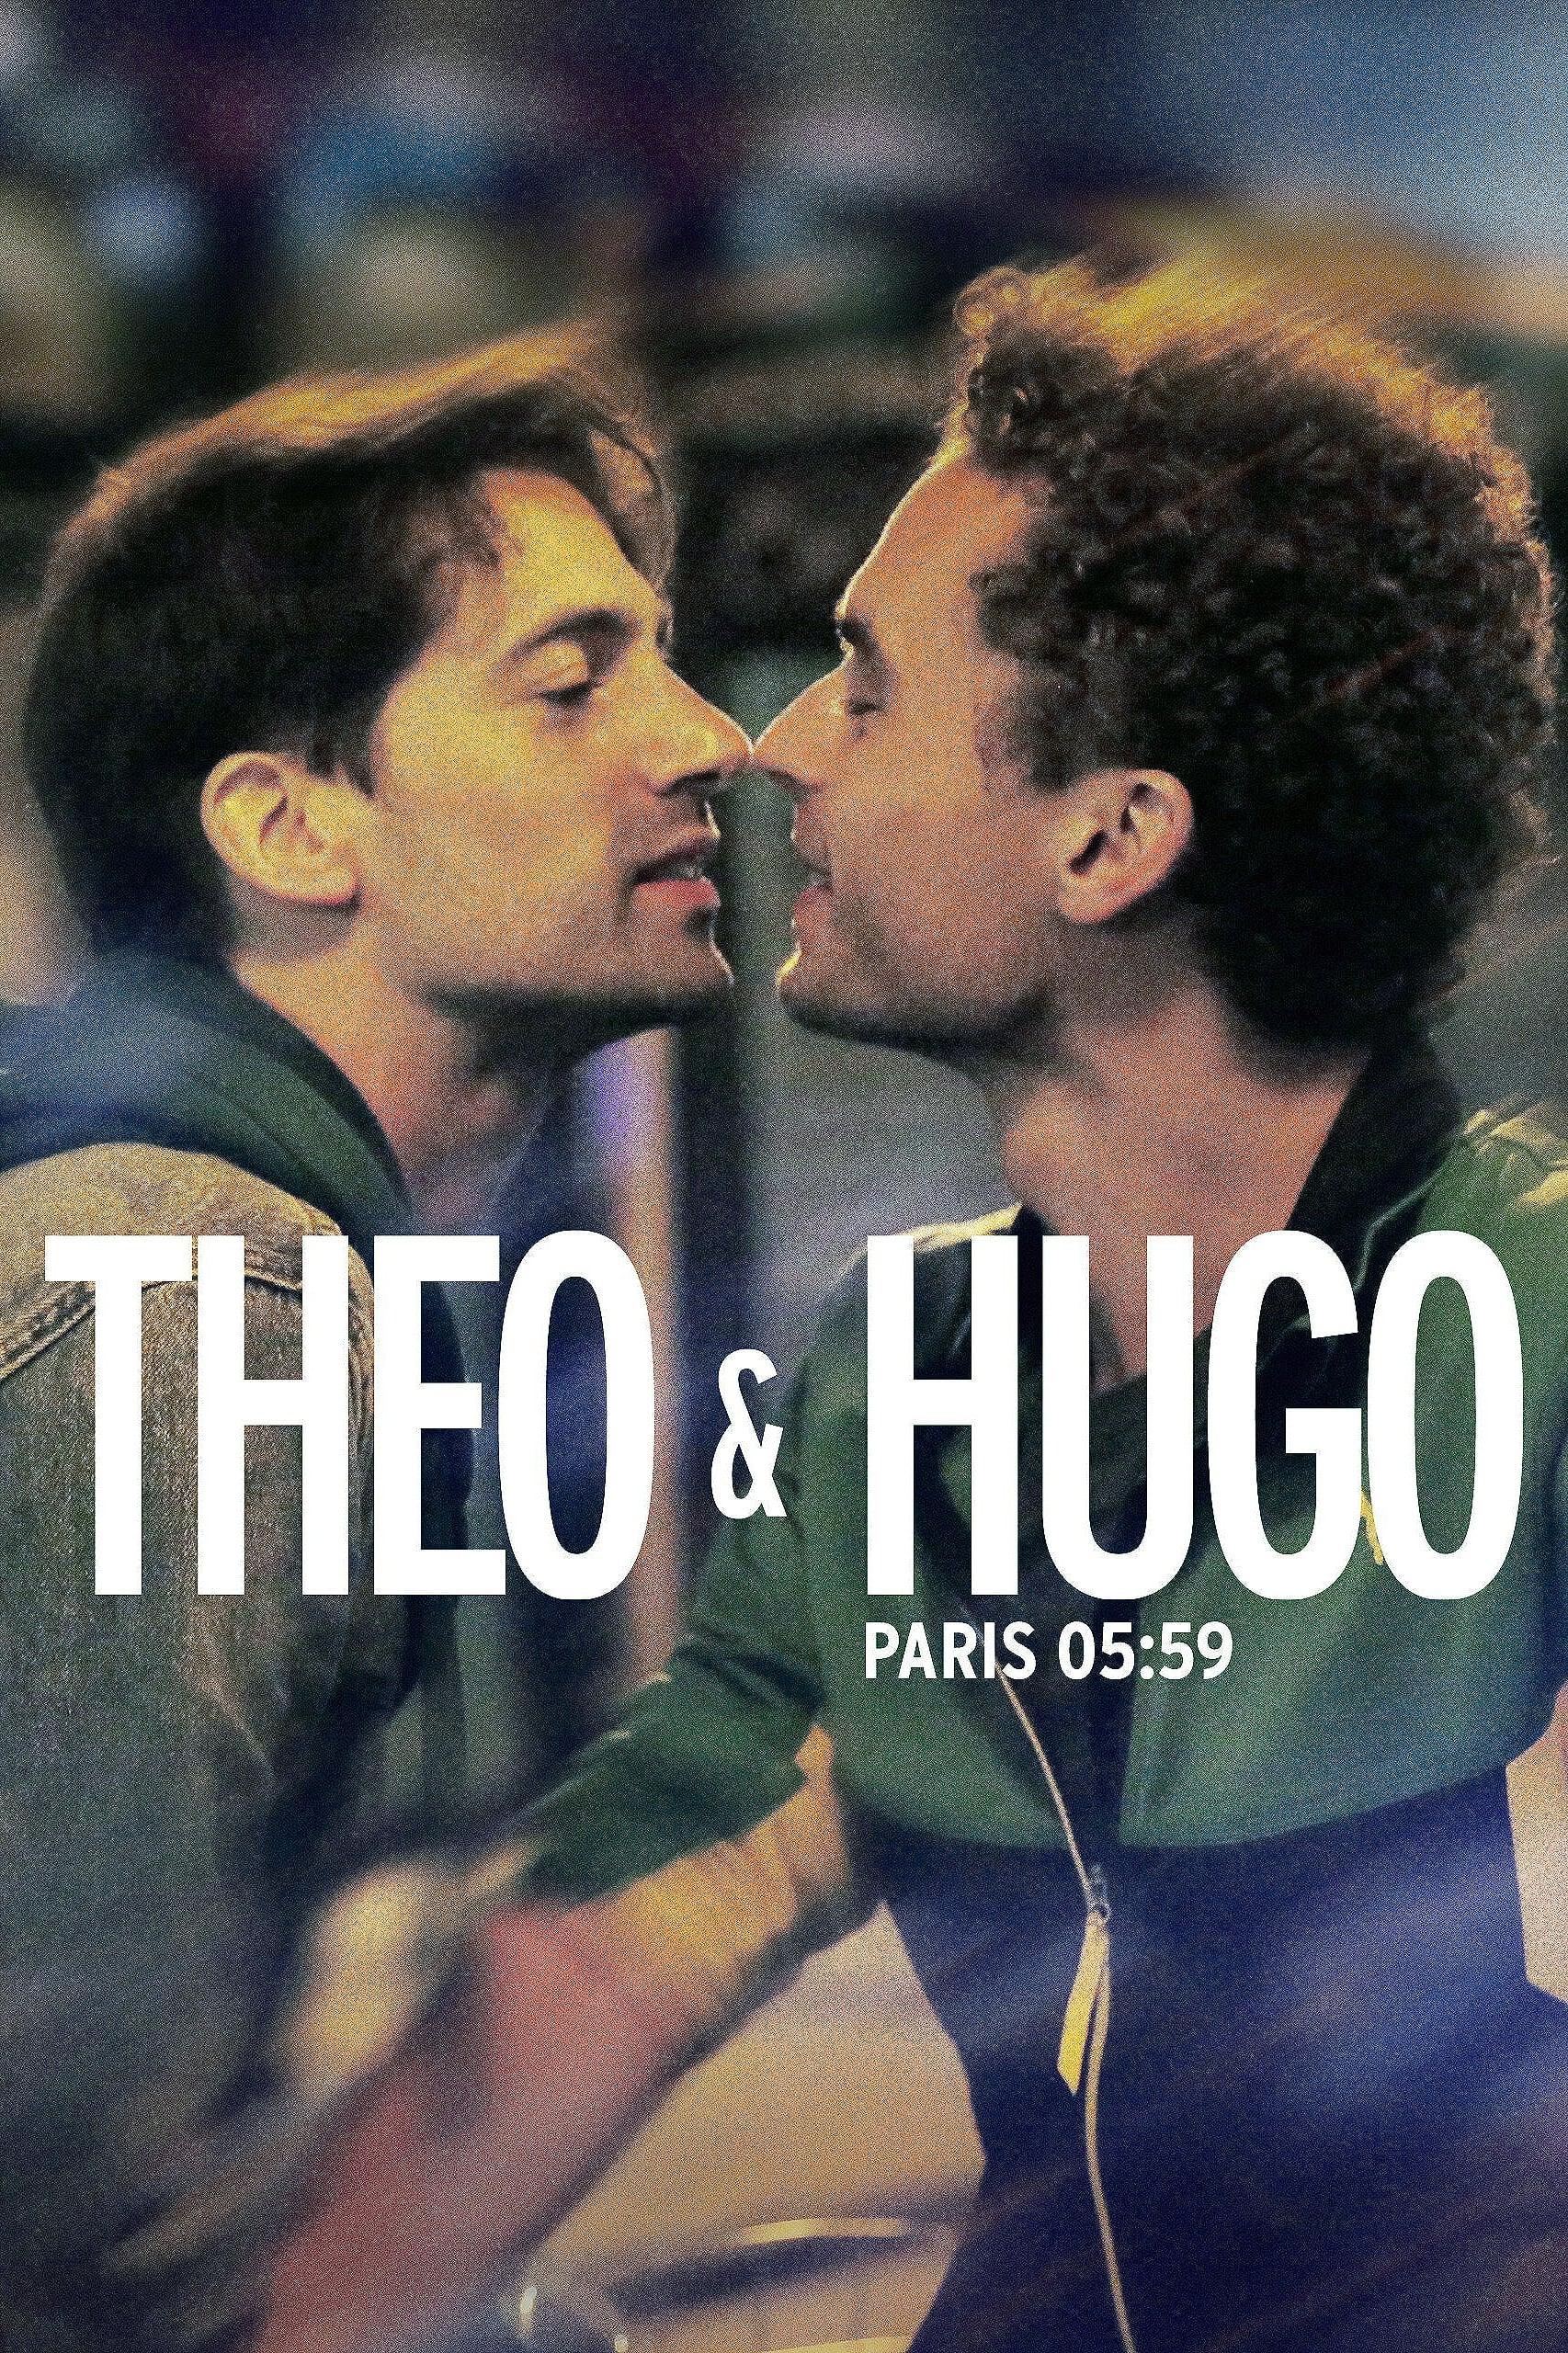 Paris 05:59 / Théo & Hugo poster